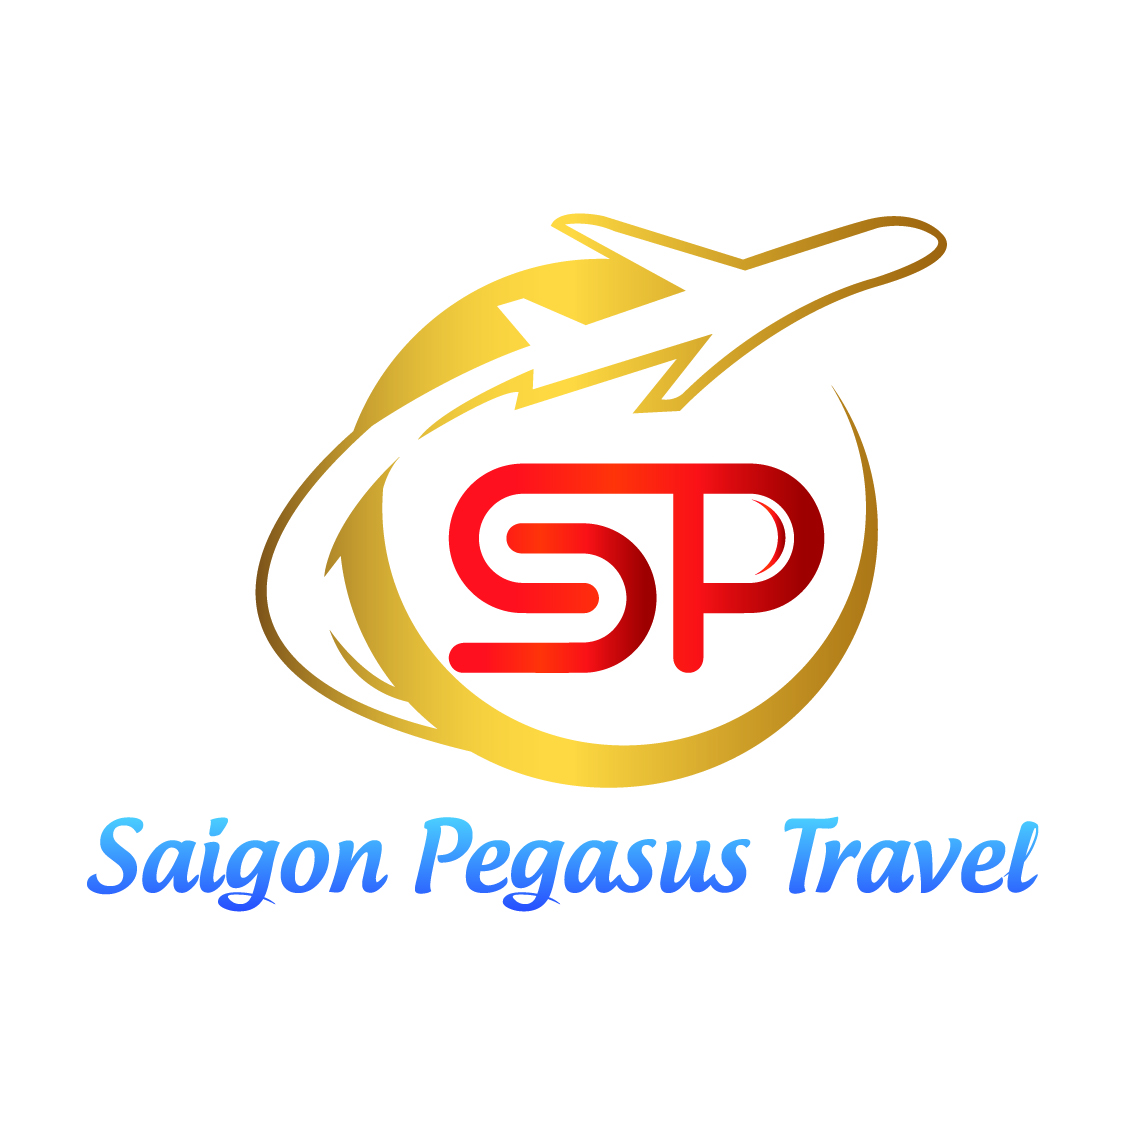 Saigon Pegasus Travel